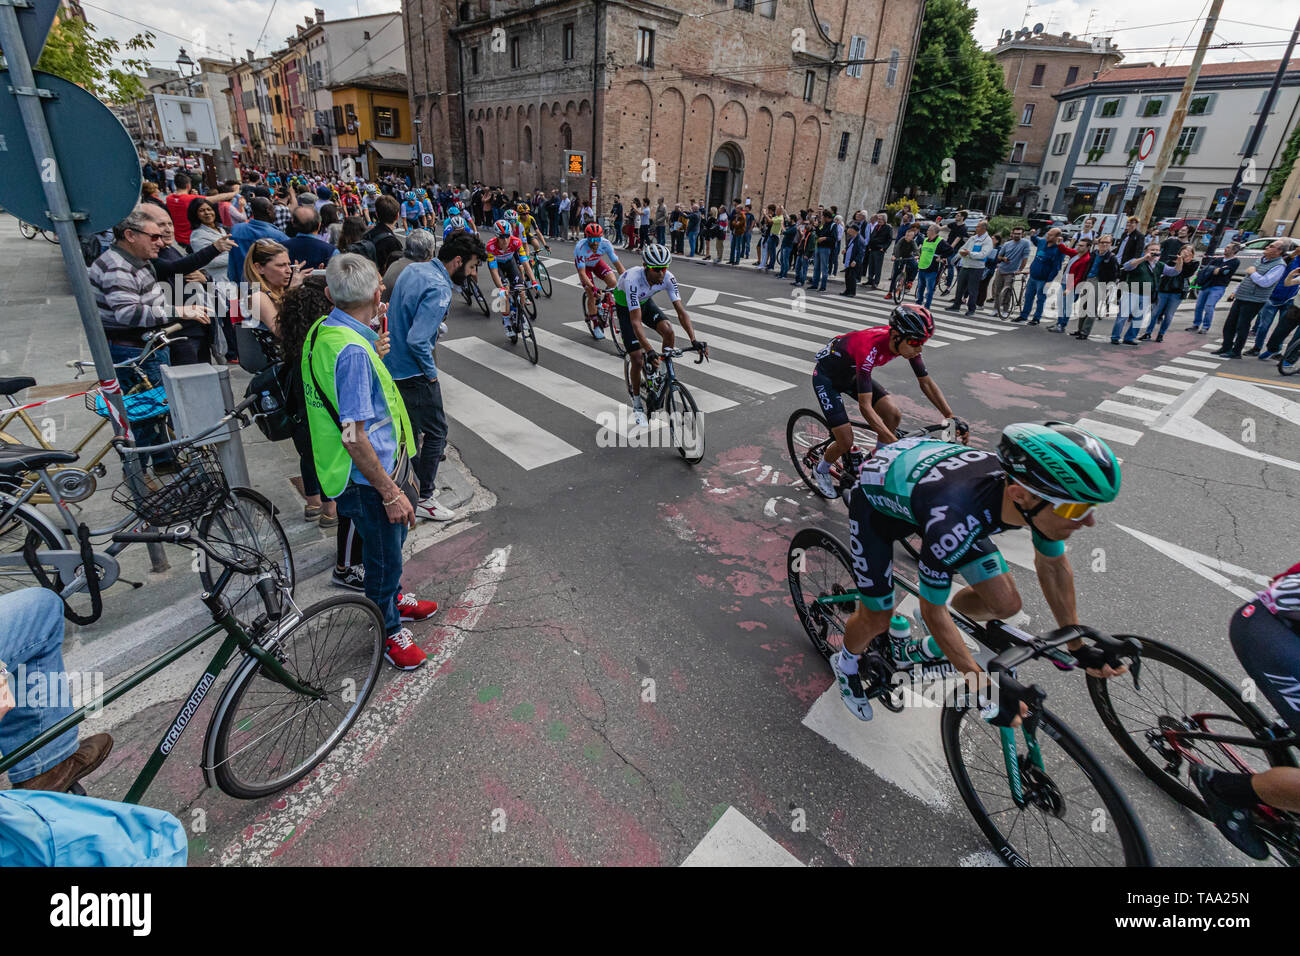 Parme, Italie - 22 mai 2019 - Giro d'Italia traverse le centre-ville de Parme, Piazzale Santa Croce Banque D'Images